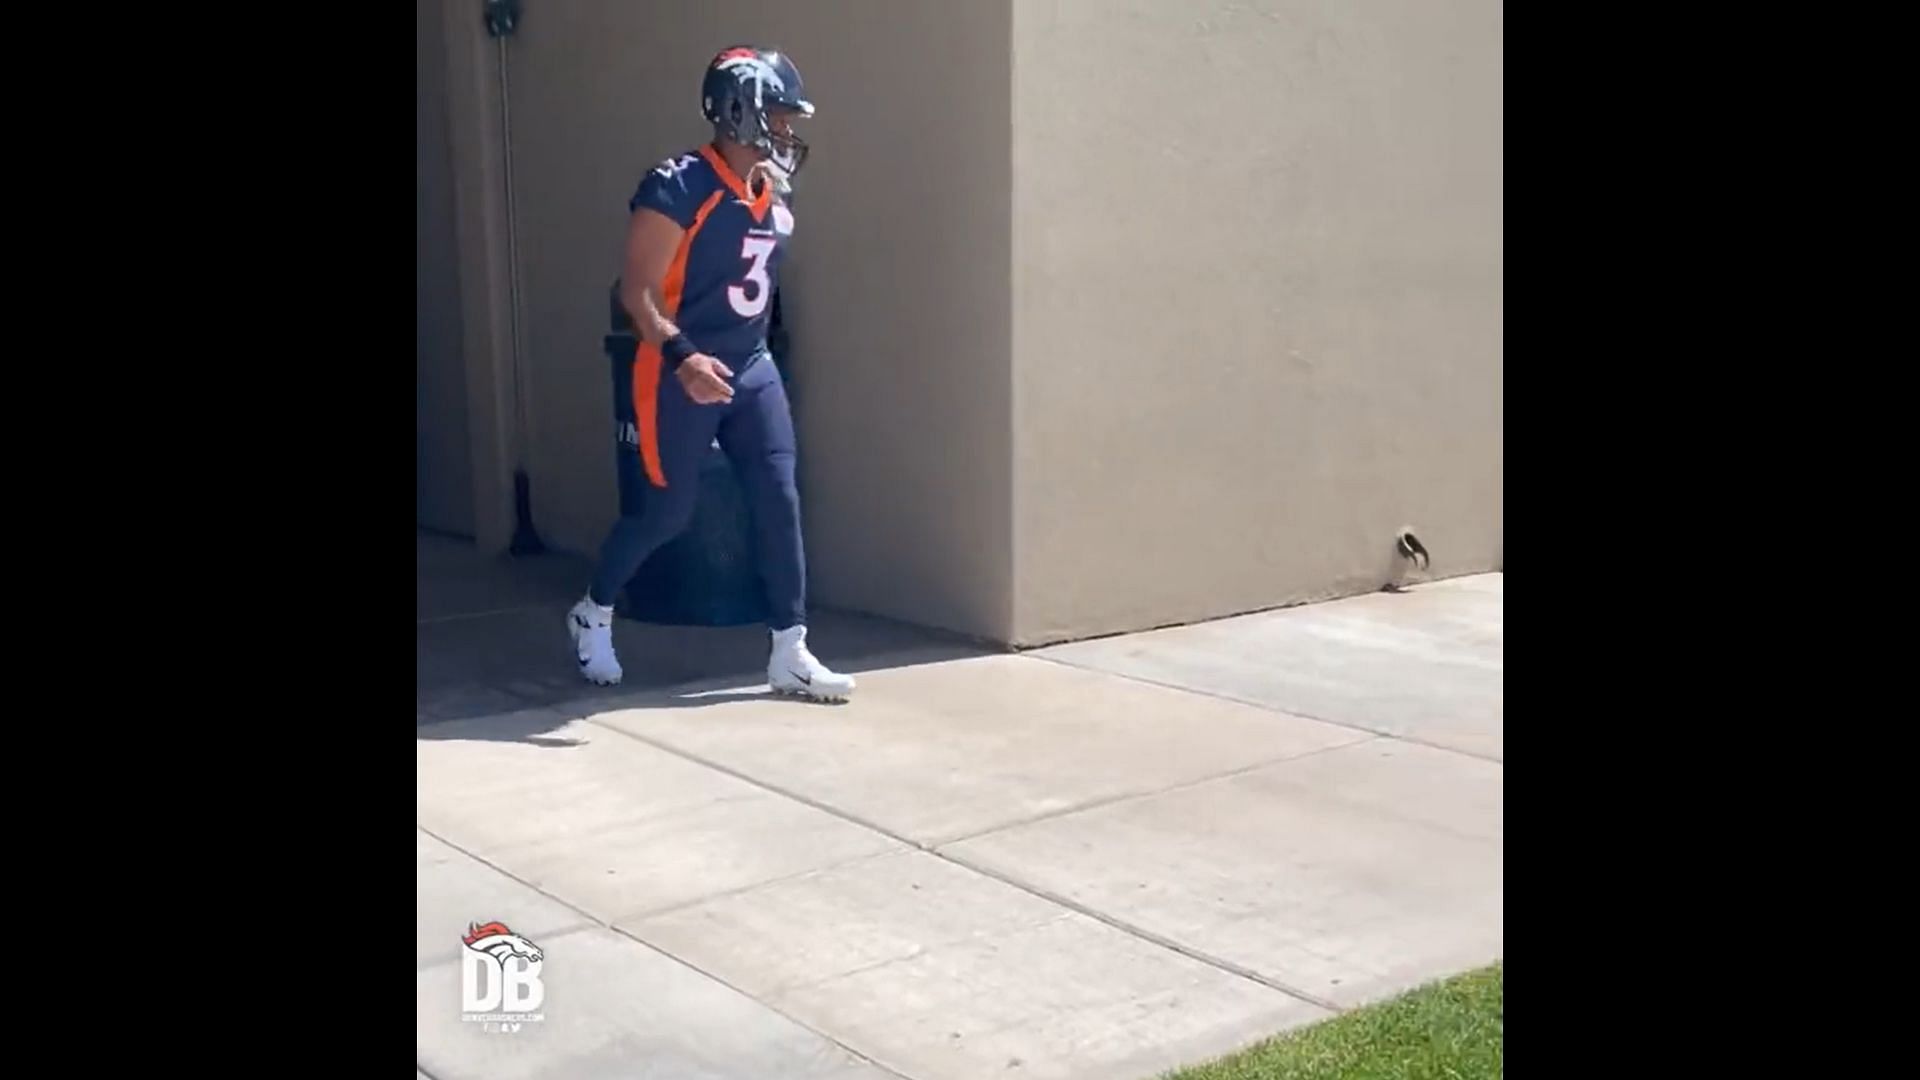 Wilson walking out in full Broncos gear